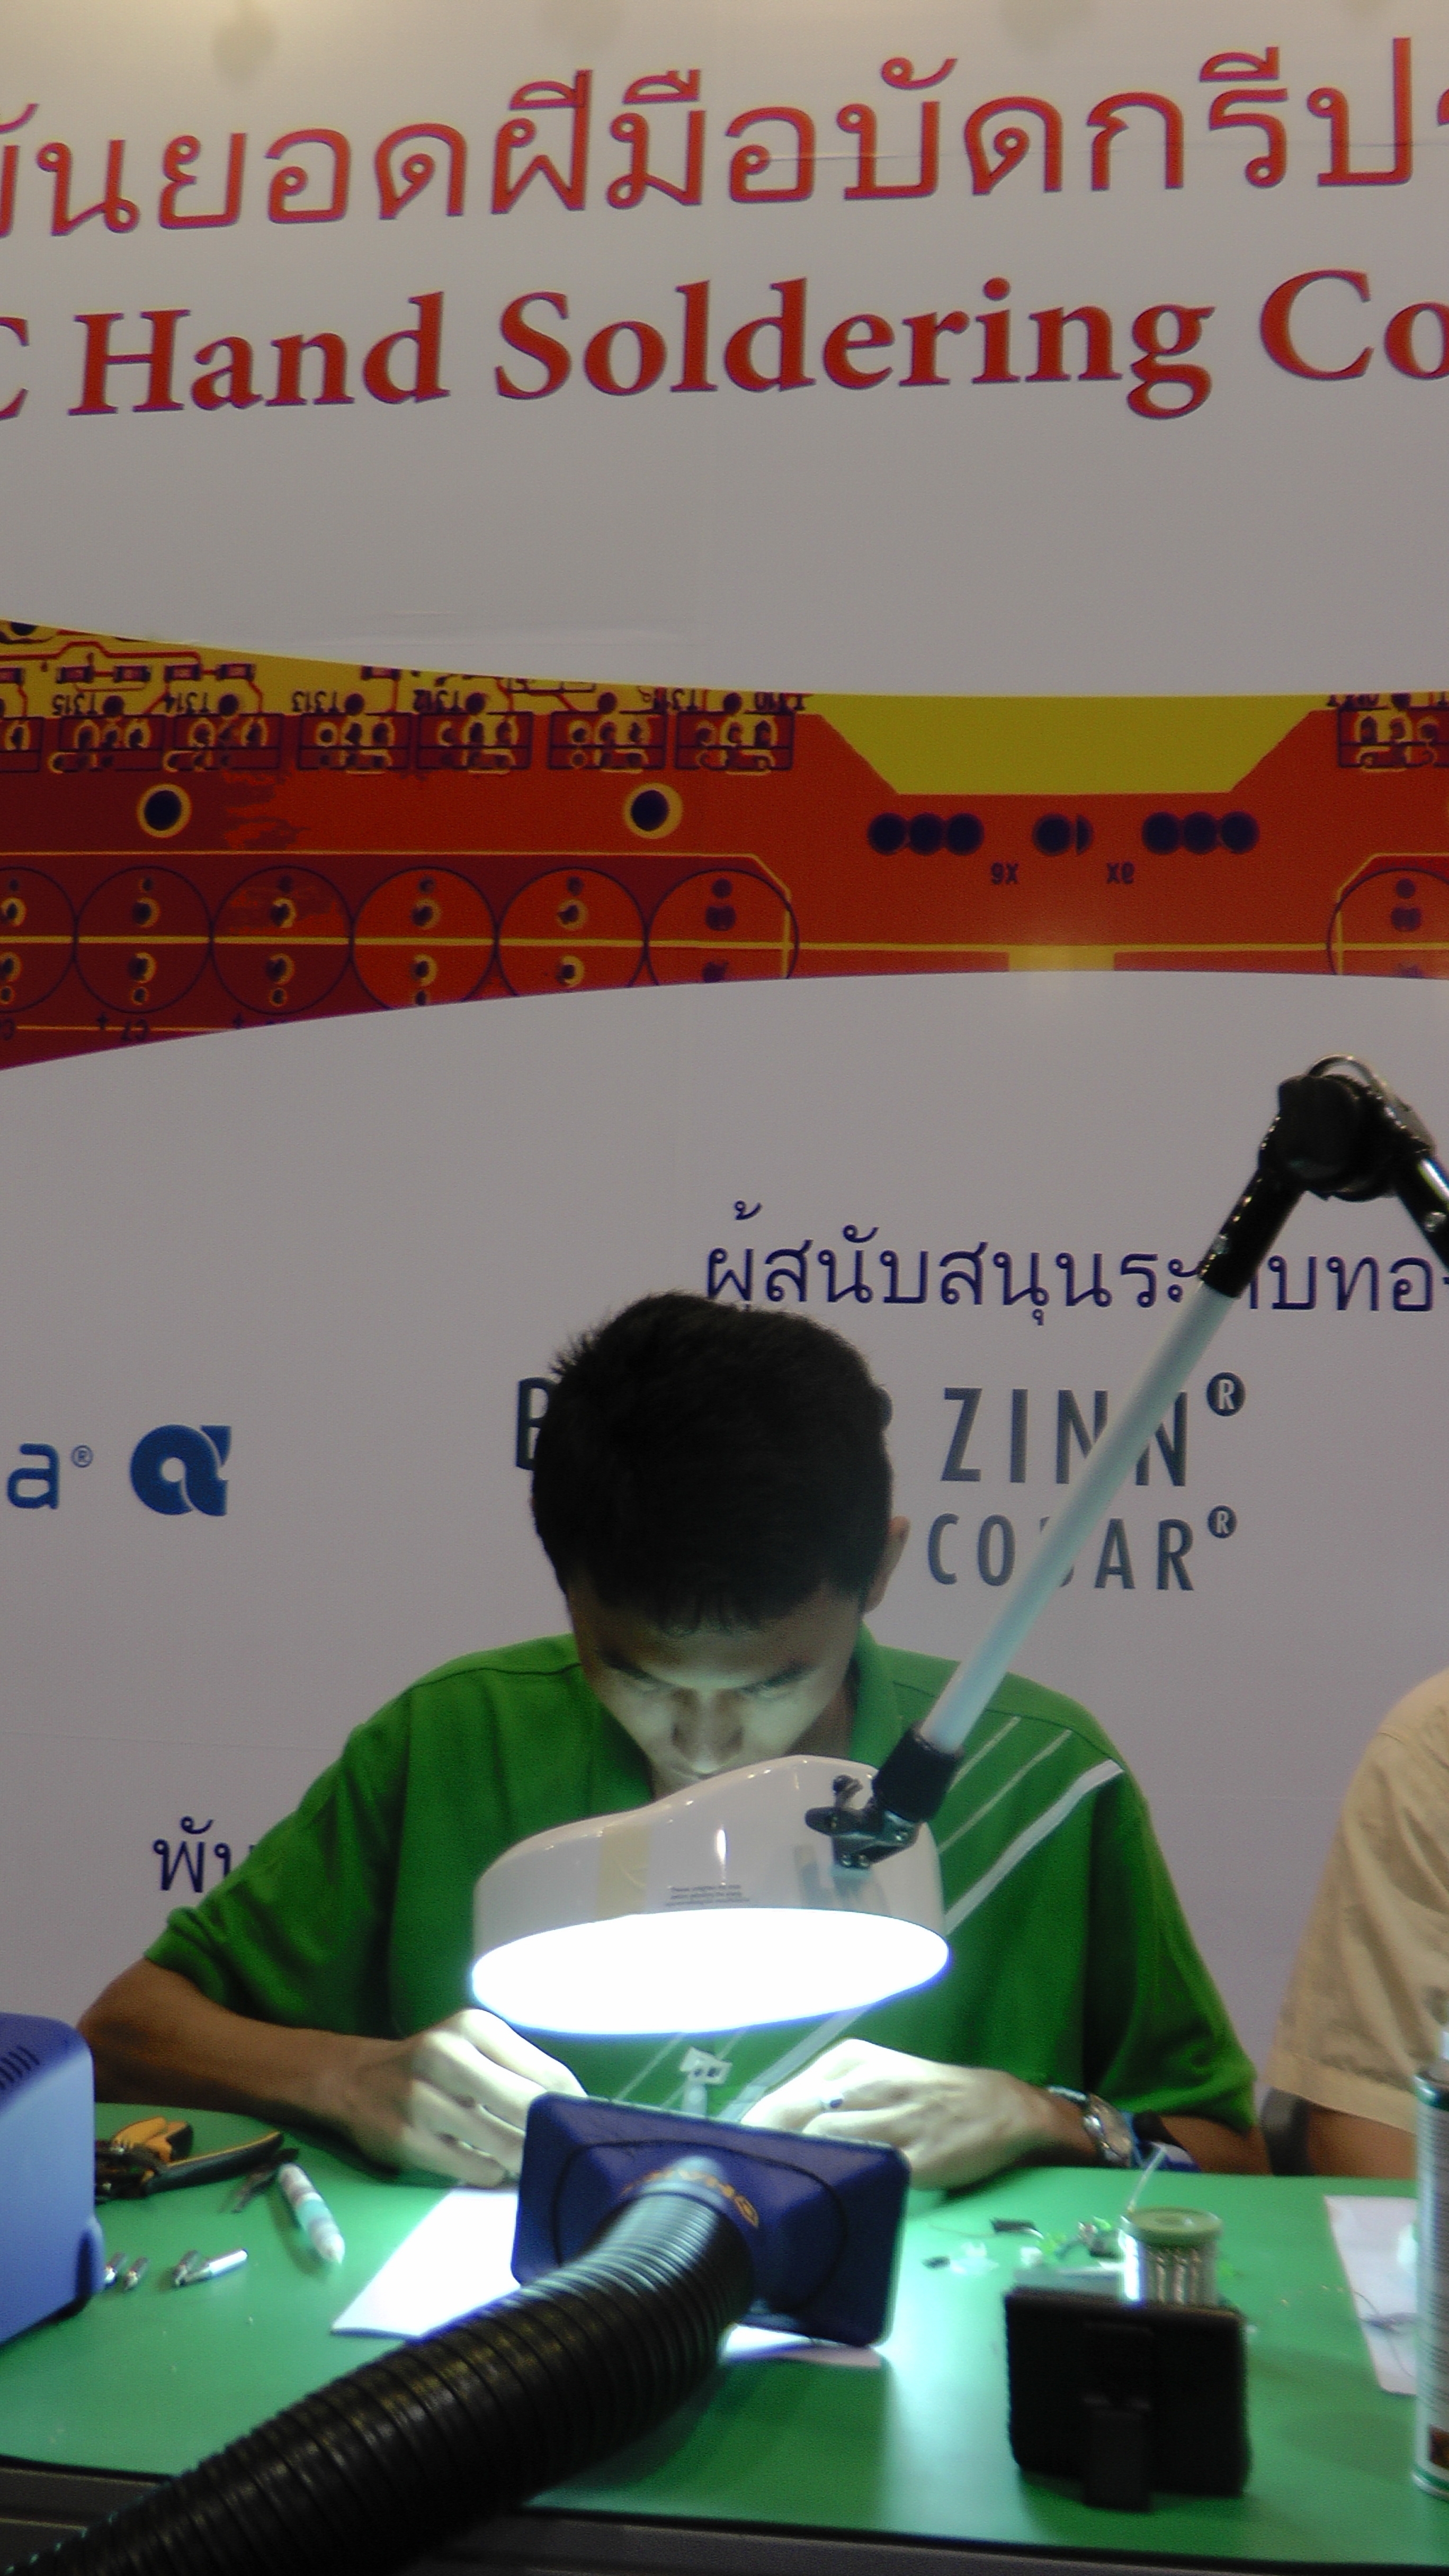 ทีมวิชาการเข้าร่วมแข่งขันยอดฝีมือบัดกรีประเทศไทย IPC 2013